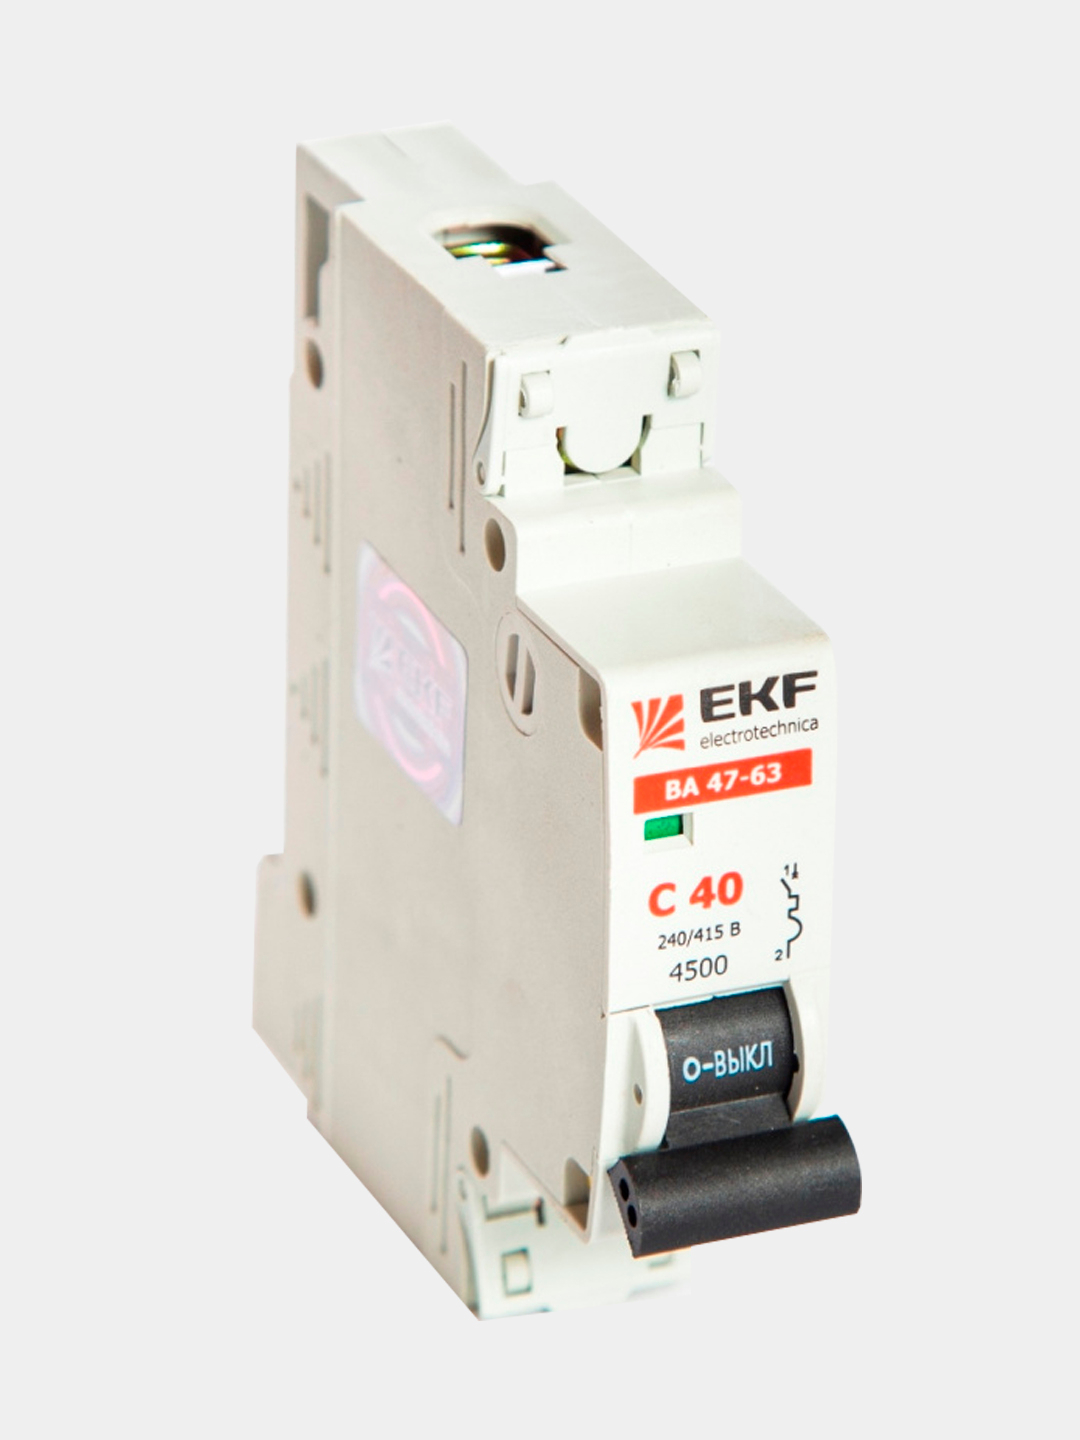 Автоматический выключатель ва47 63 ekf. Автоматический выключатель EKF proxima ва47-63. Автоматический выключатель EKF c63. Автоматический выключатель EKF ba 47-63. Автомат EKF с32.